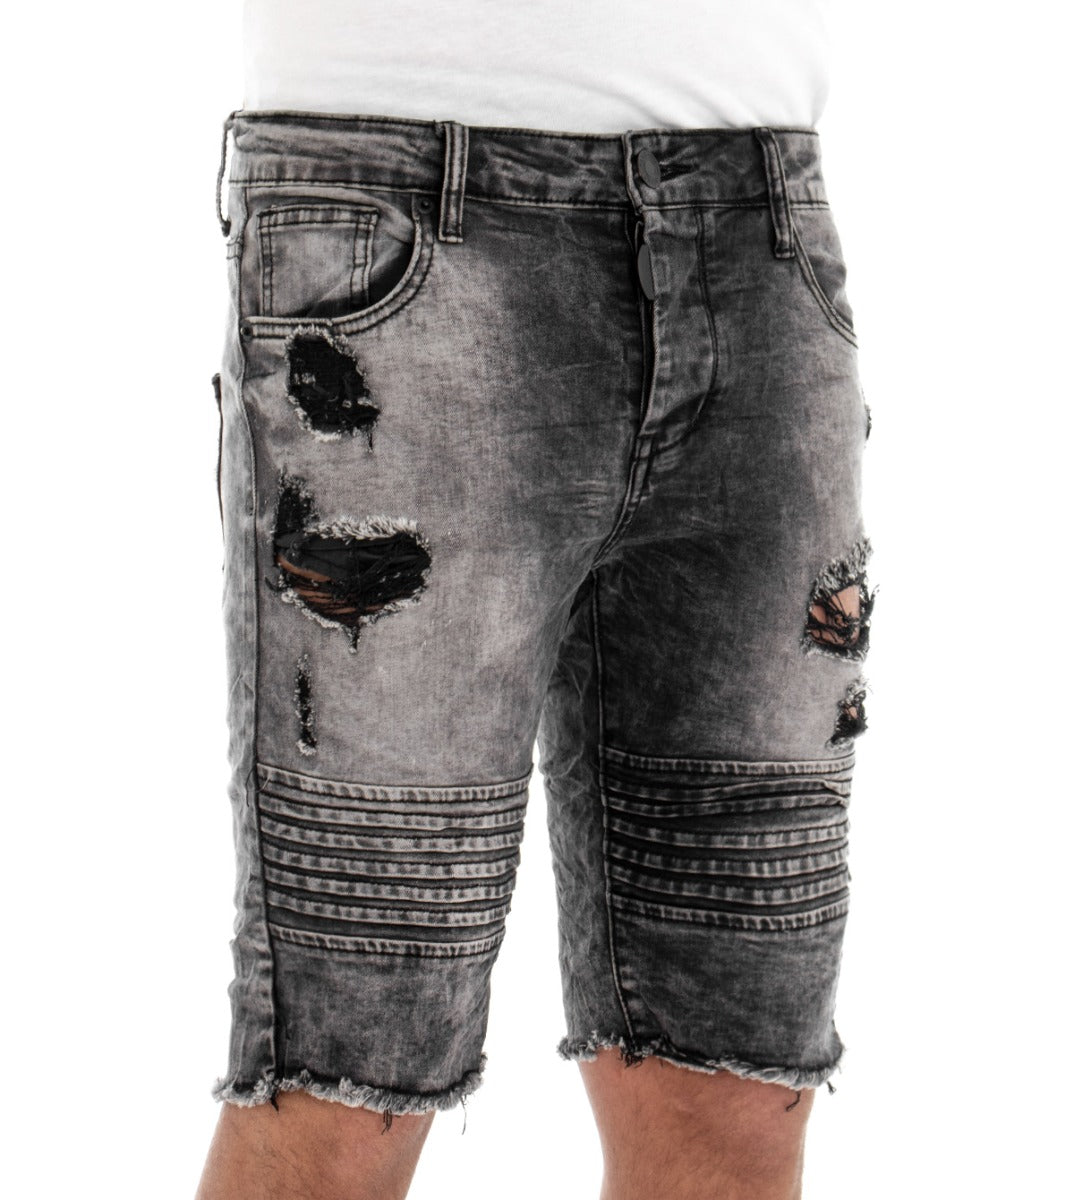 Bermuda Shorts Men's Short Jeans Gray Five Pockets Breaks Biker GIOSAL-PC1289A